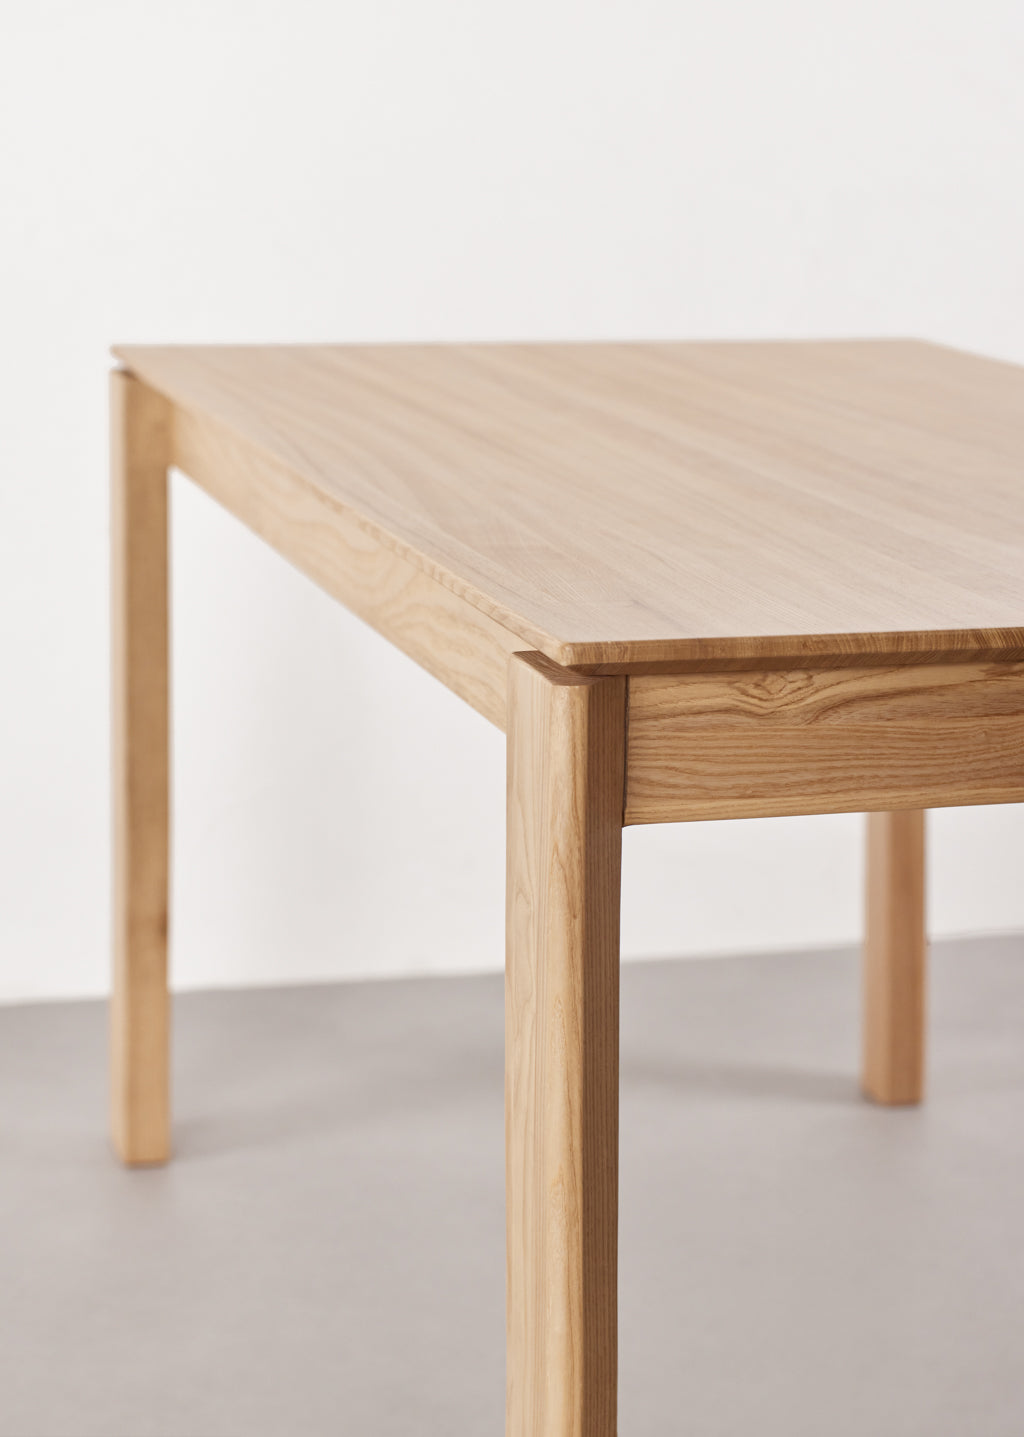 St-Laurent Wood Table